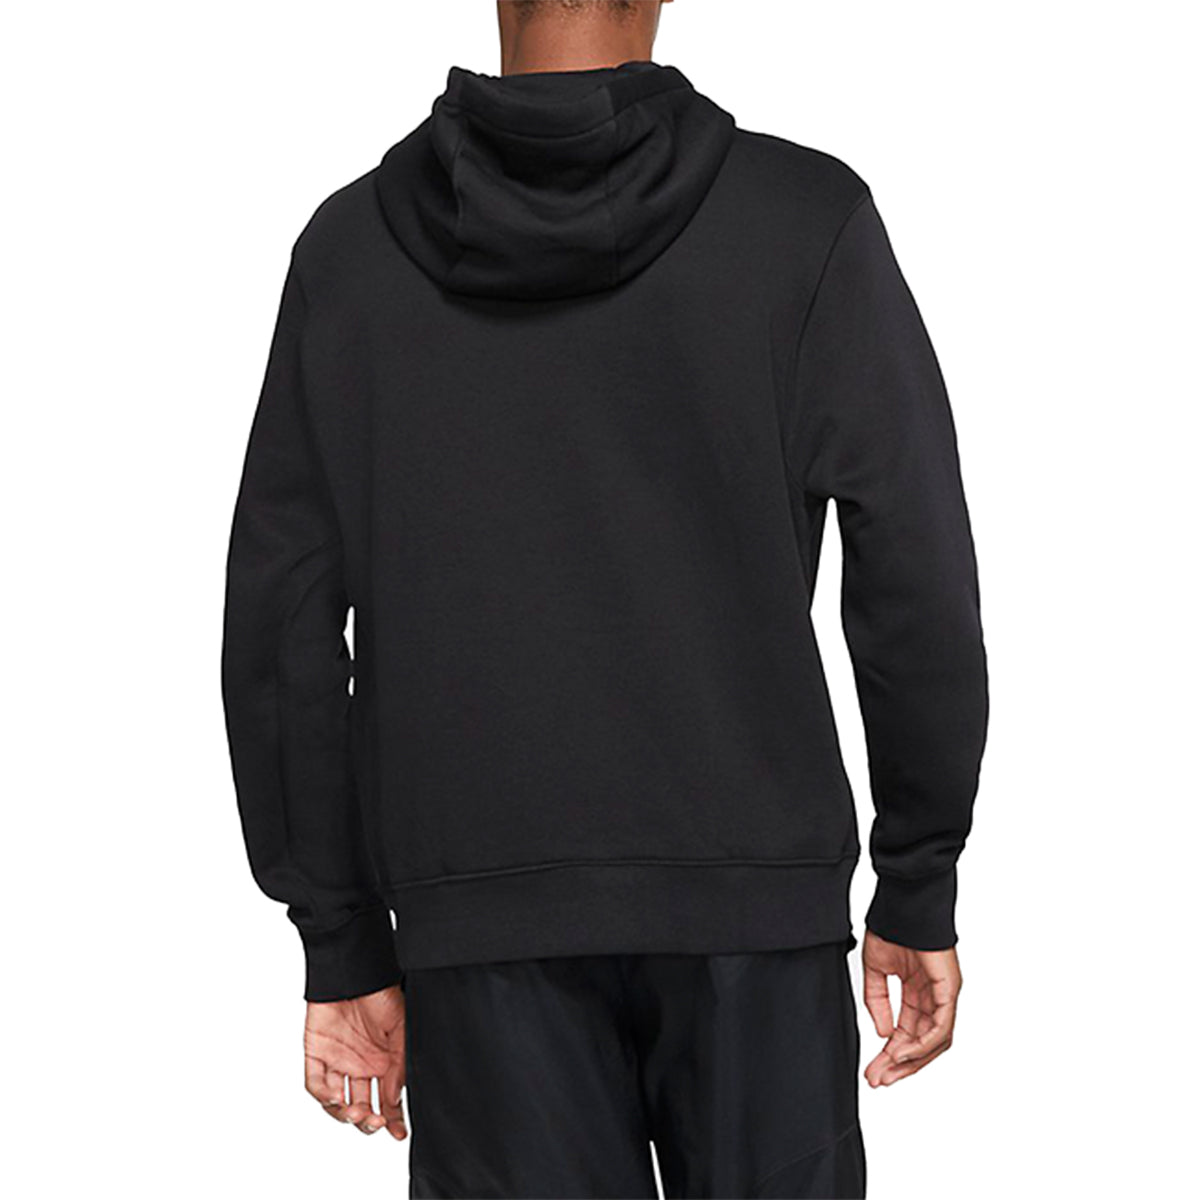 Nike Sportswear Fleece Hoodie Mens Style : Cq7205